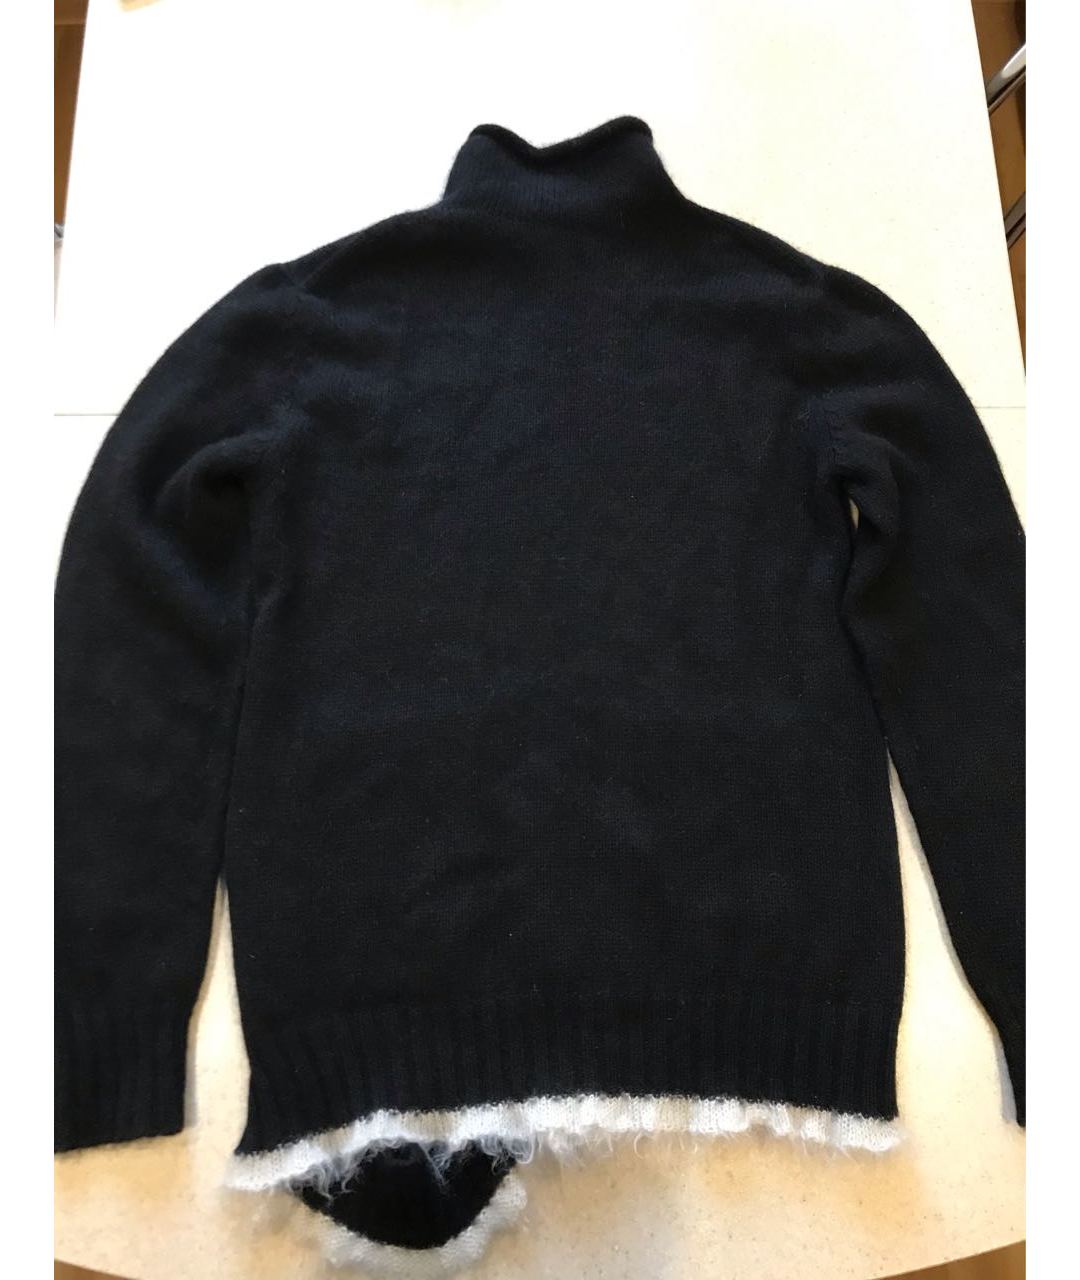 CELINE PRE-OWNED Черный кашемировый джемпер / свитер, фото 3